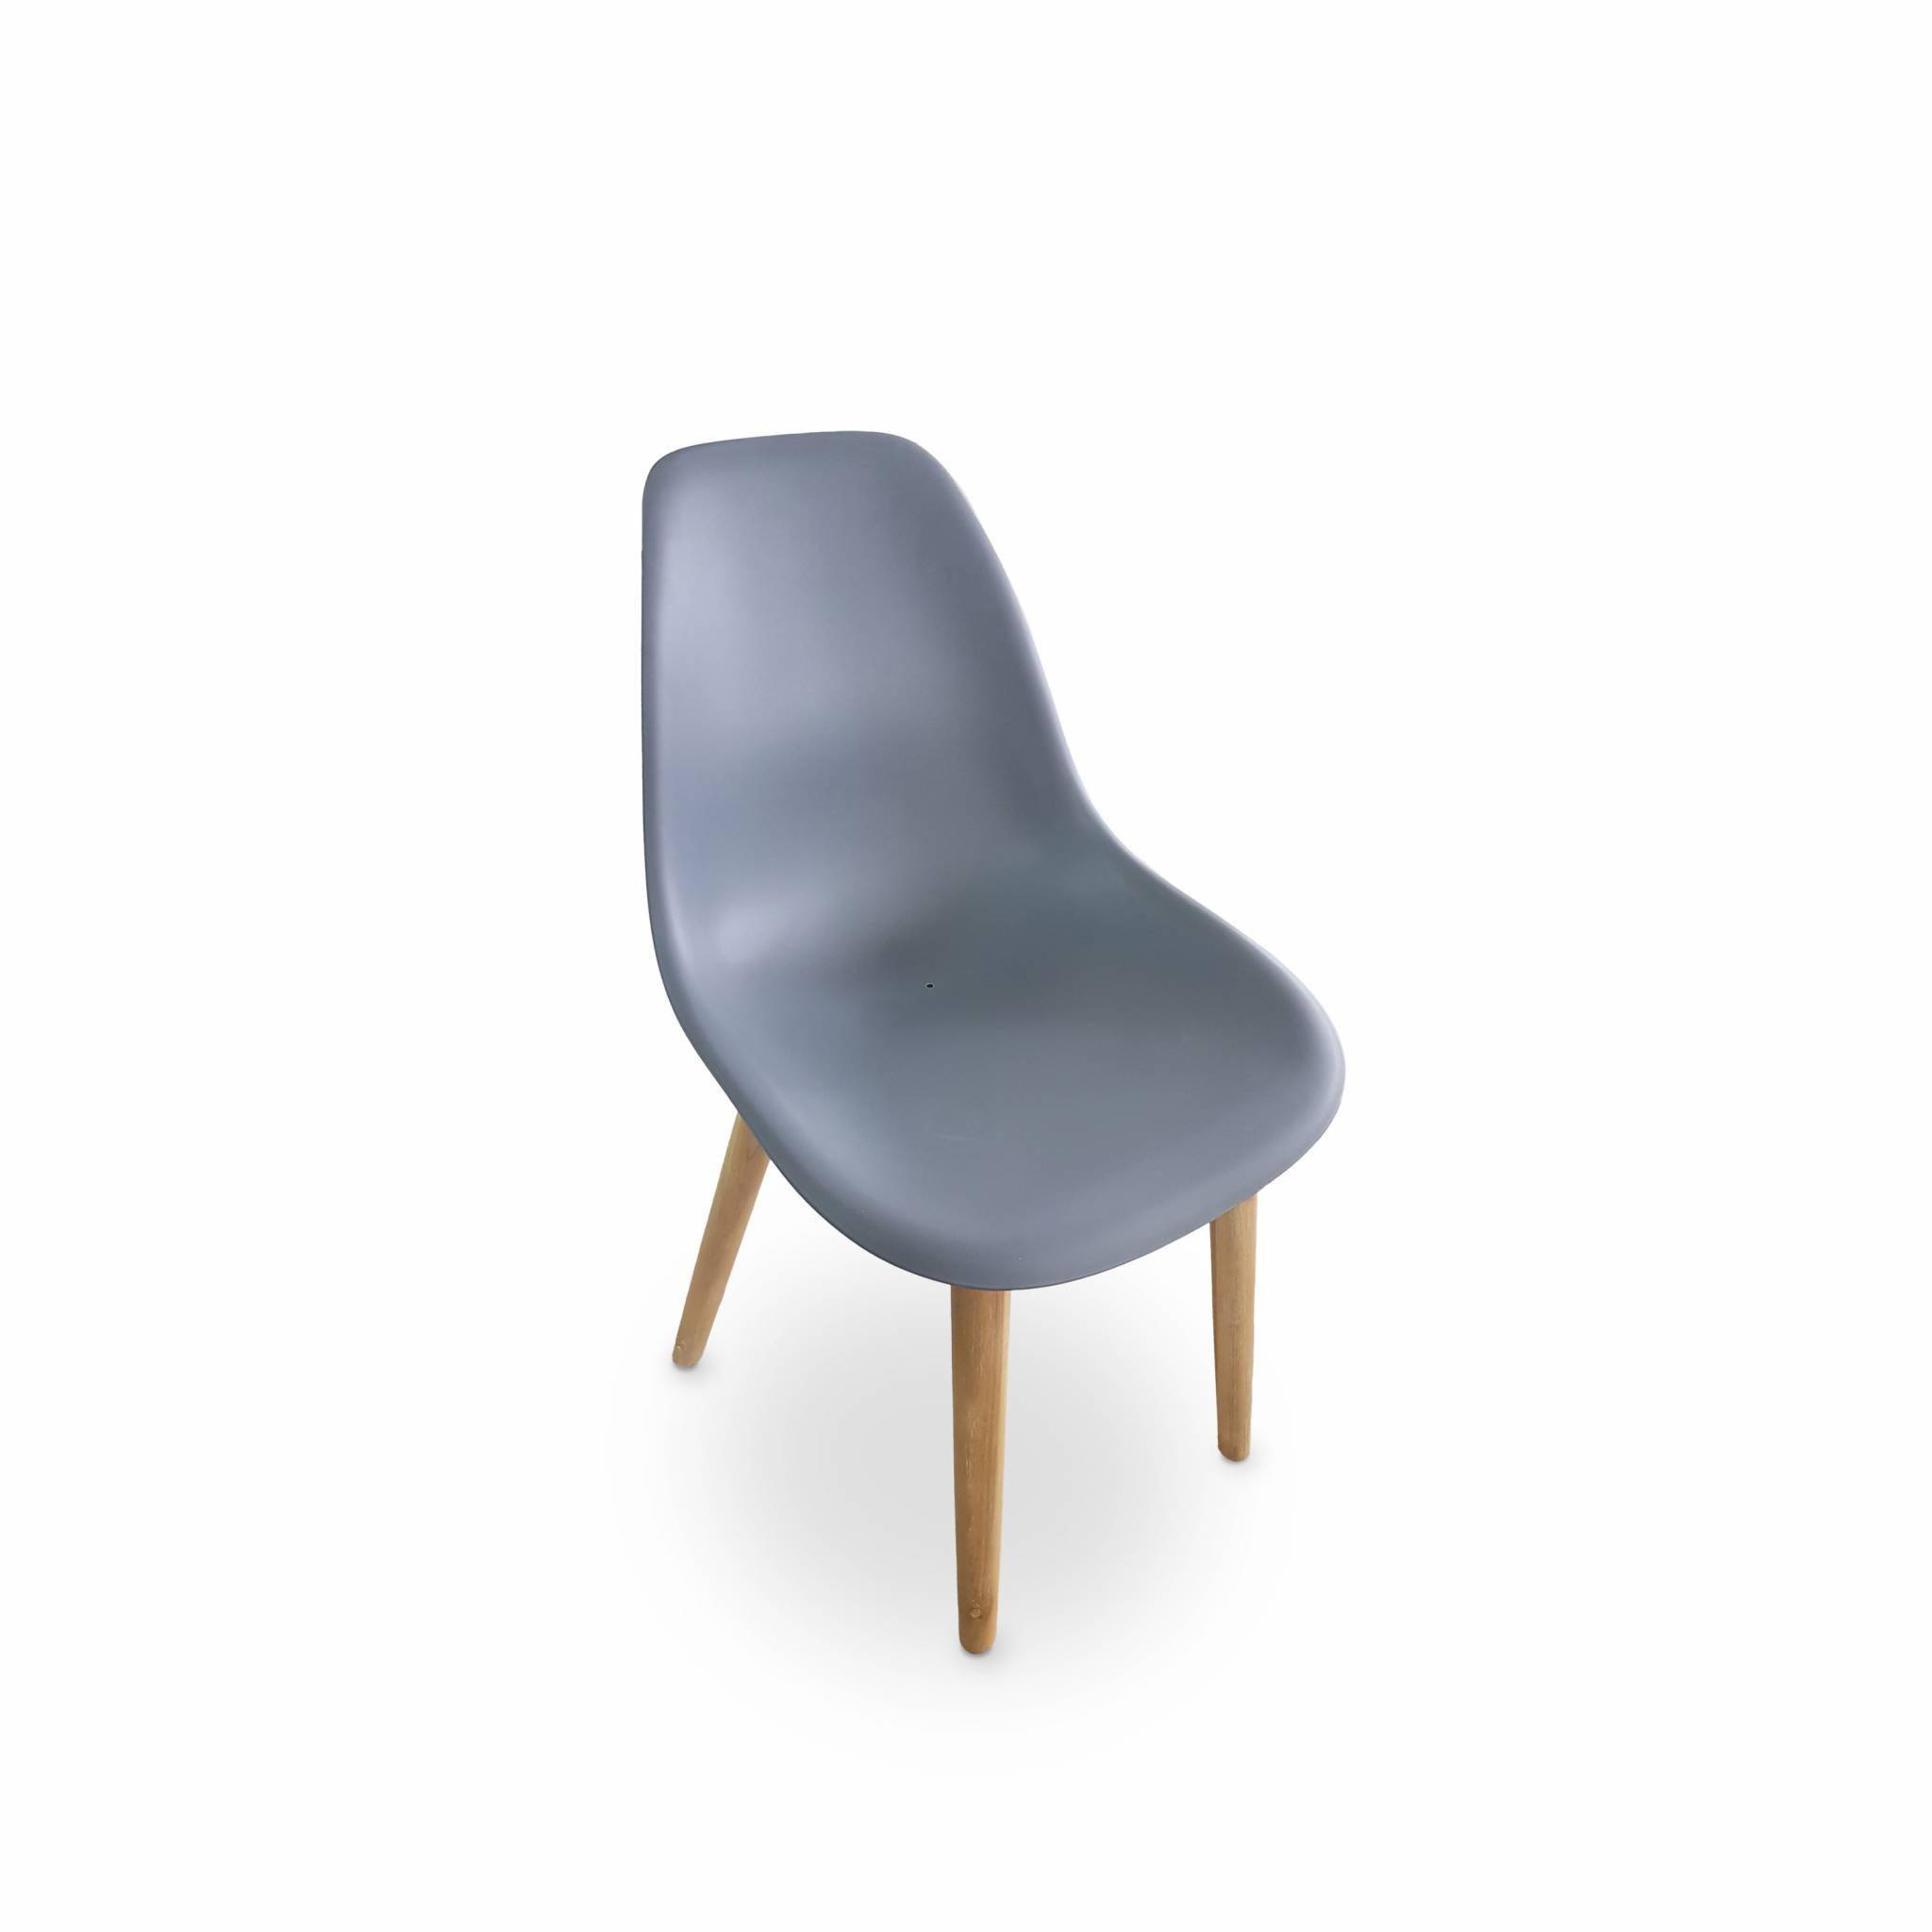 4er Set skandinavische Stühle Penida, aus Akazienholz und anthrazitfarbenem Kunstharz gespritzt, innen/außen Photo2